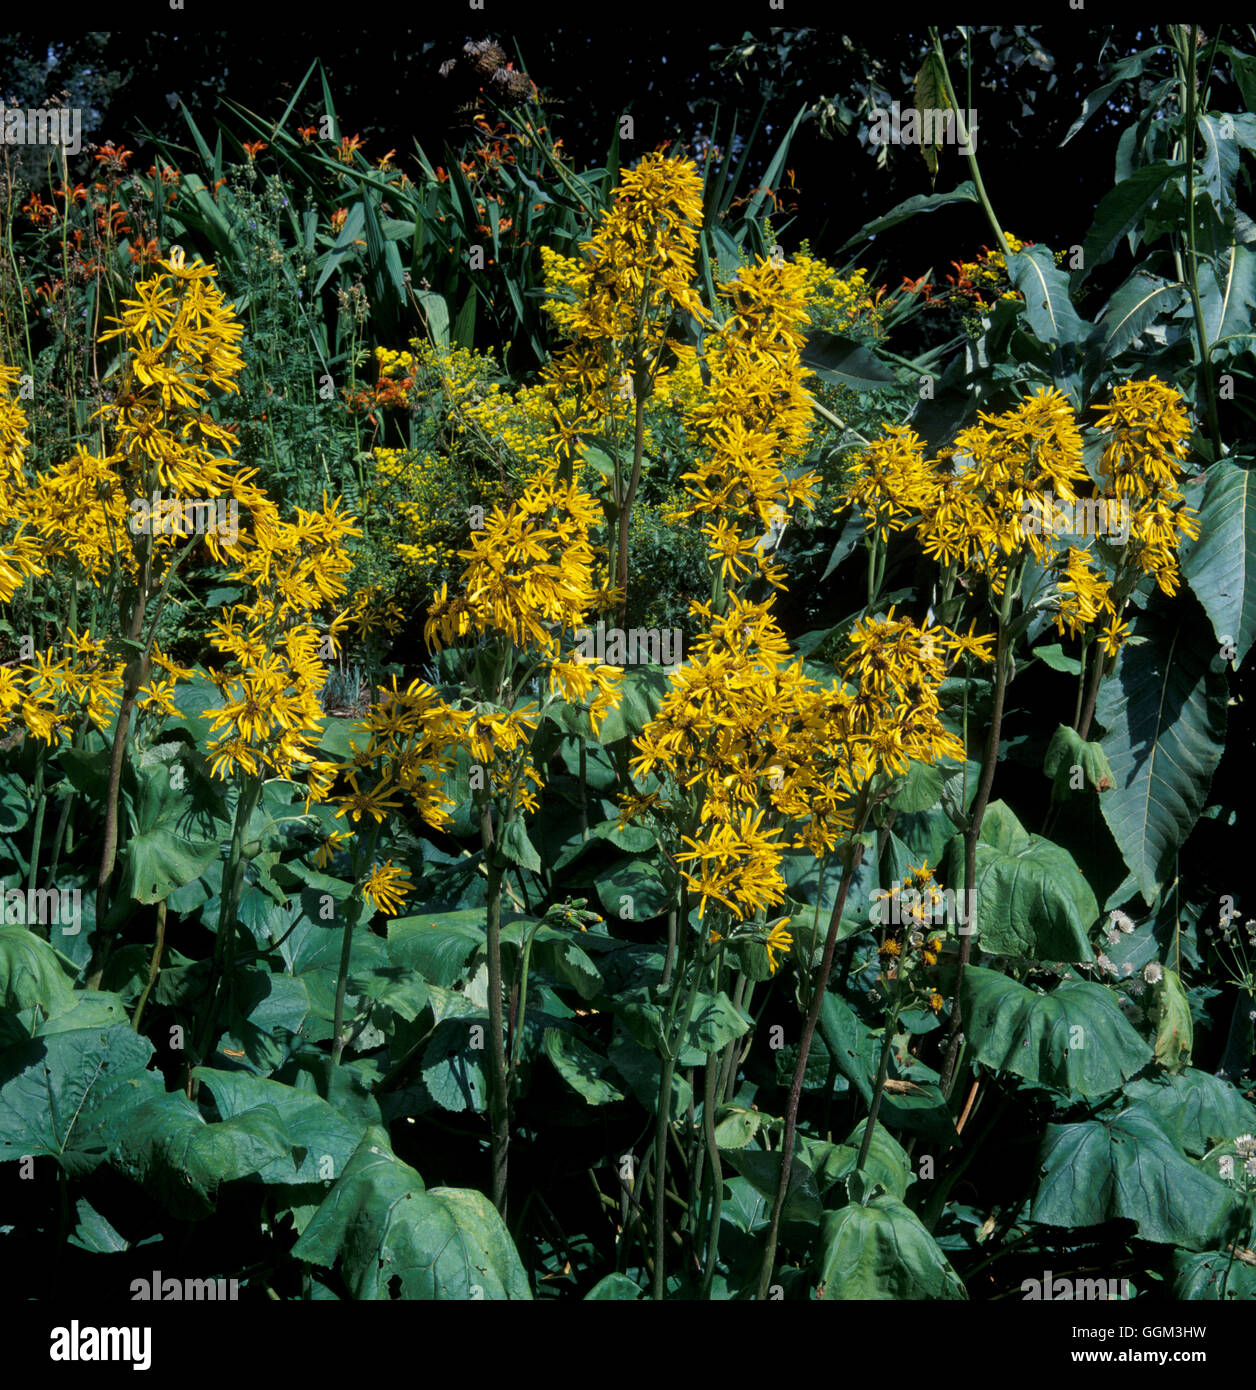 Dürre Ligularia 'Sungold' welke durch den Mangel an Wasser Datum: 20.06.08 Horti PES038025 Fotos Stockfoto